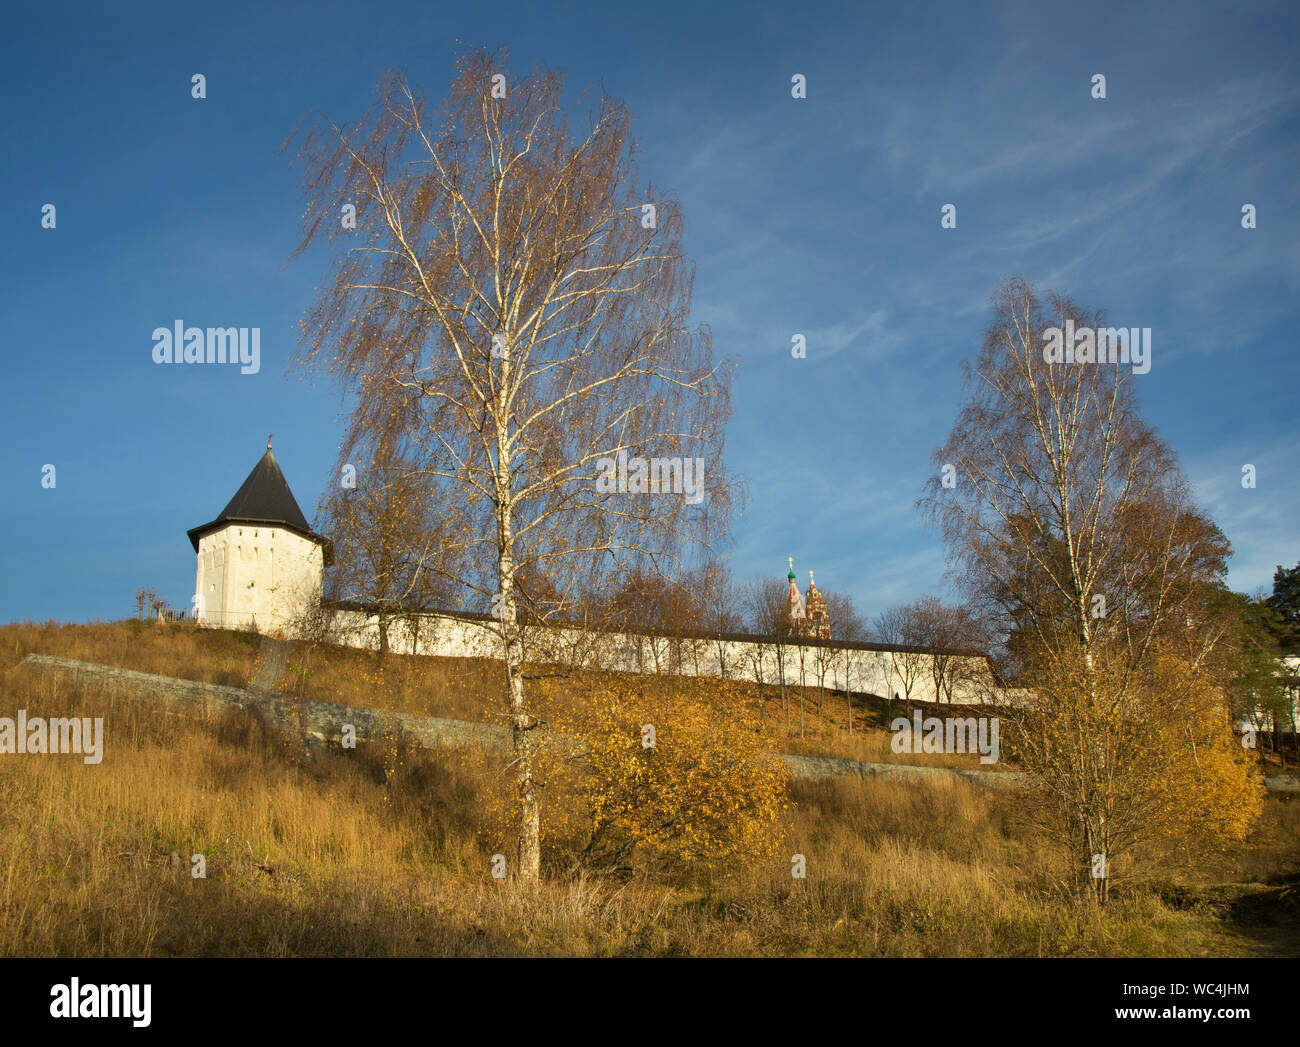 Savvino-Storozhevsky monastery (Storozhi monastery of St. Savva). Zvenigorod. Russia Stock Photo